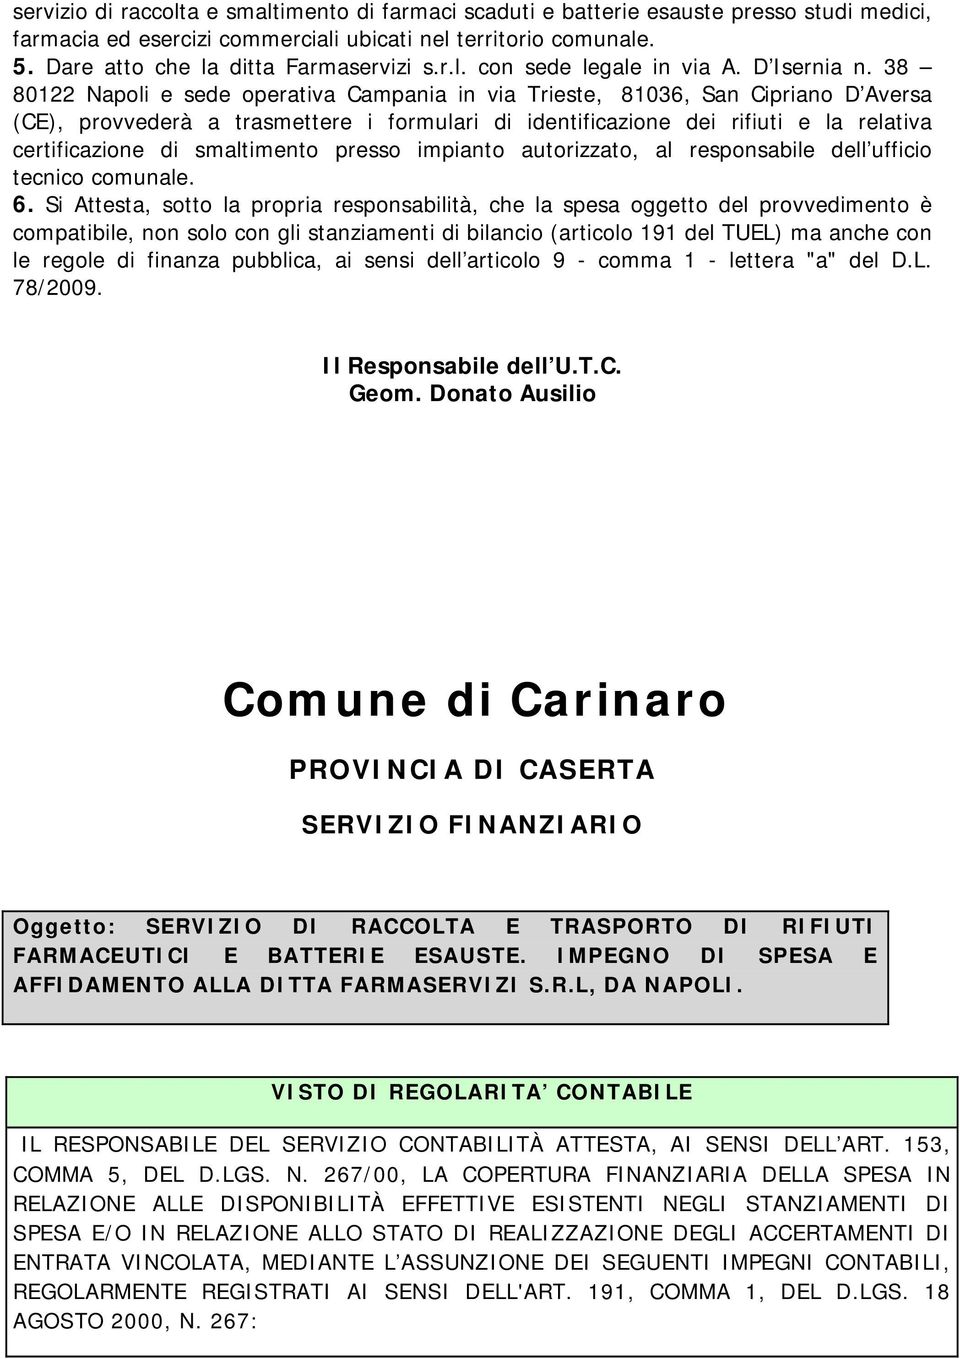 38 80122 Napoli e sede operativa Campania in via Trieste, 81036, San Cipriano D Aversa (CE), provvederà a trasmettere i formulari di identificazione dei rifiuti e la relativa certificazione di